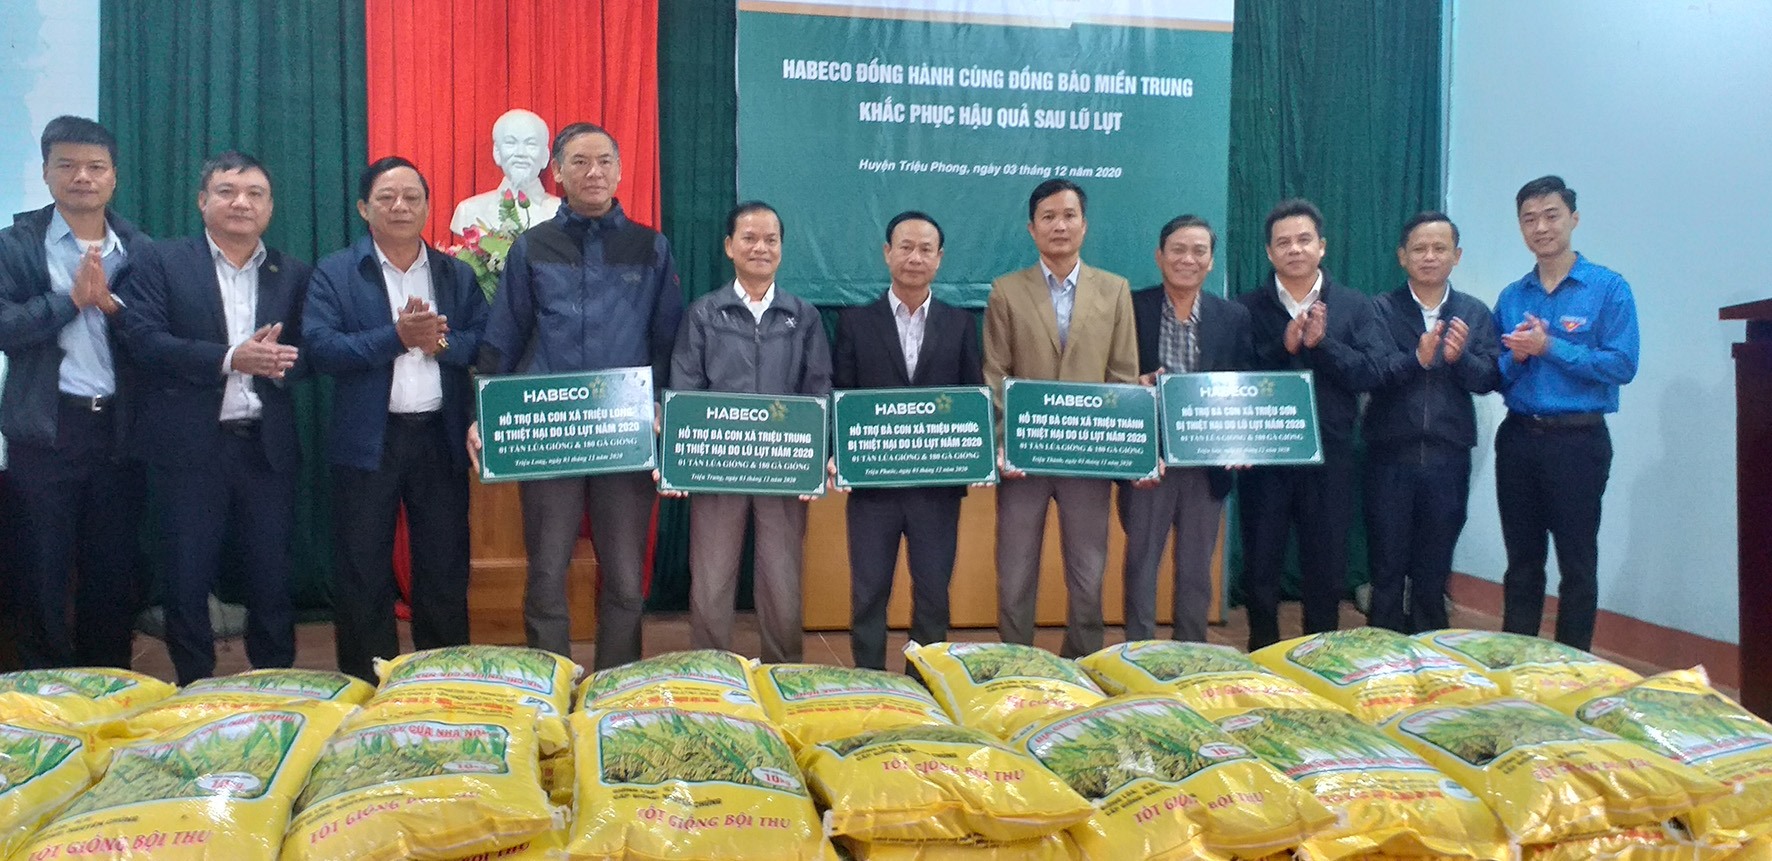 Lãnh đạo huyện Triệu Phong và Habeco trao lúa giống cho người dân -Ảnh: C.T